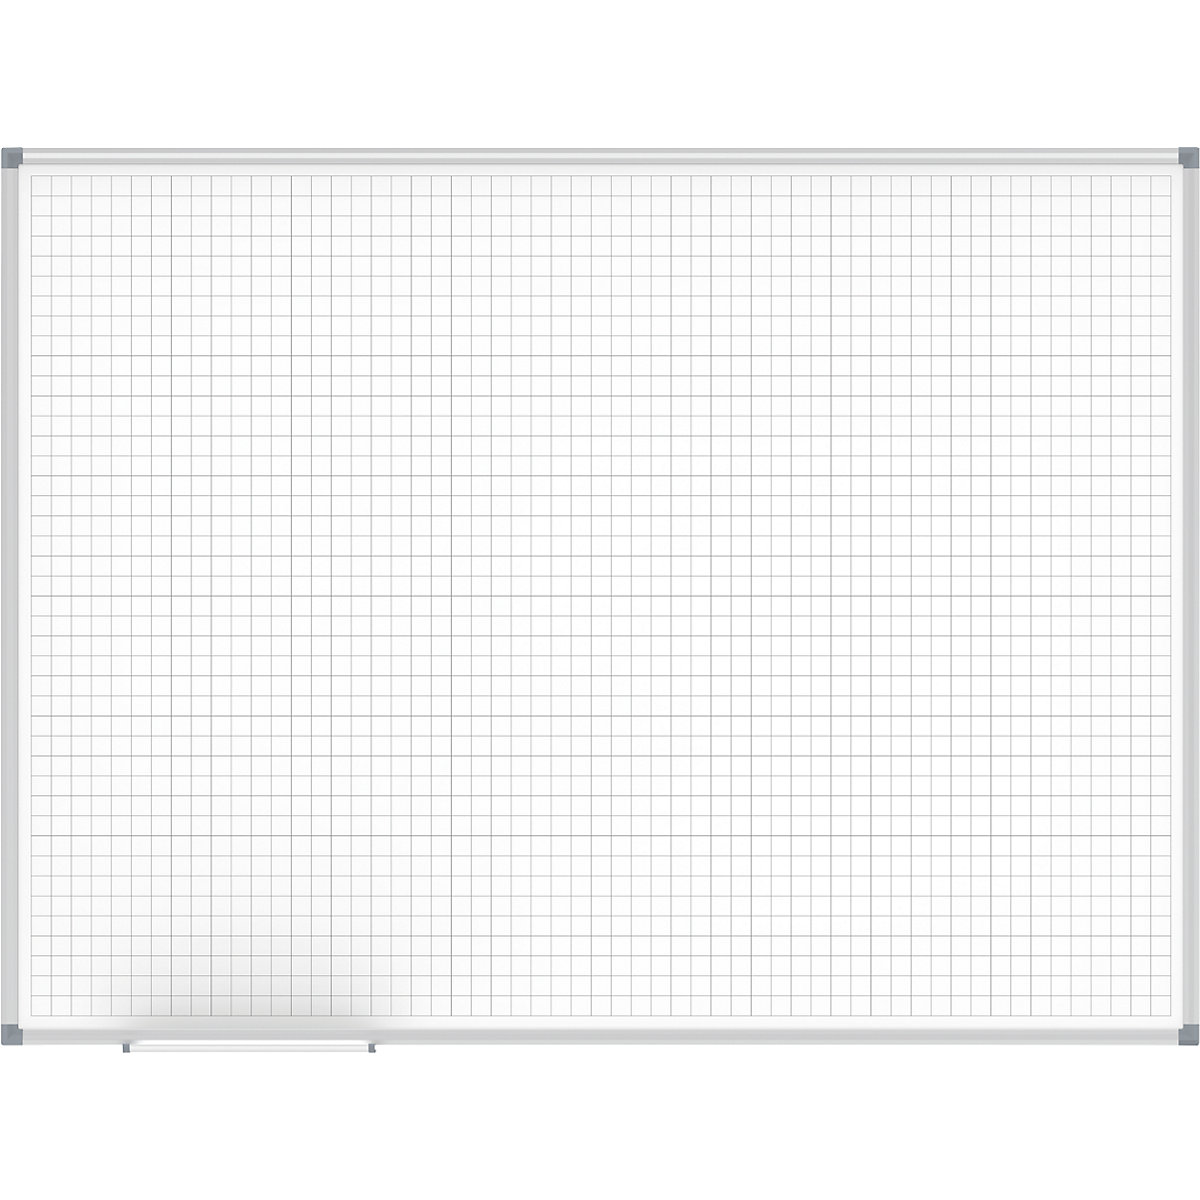 Tableau quadrillé MAULstandard, blanc – MAUL, quadrillage 20 x 20 mm, l x h 1200 x 900 mm-3